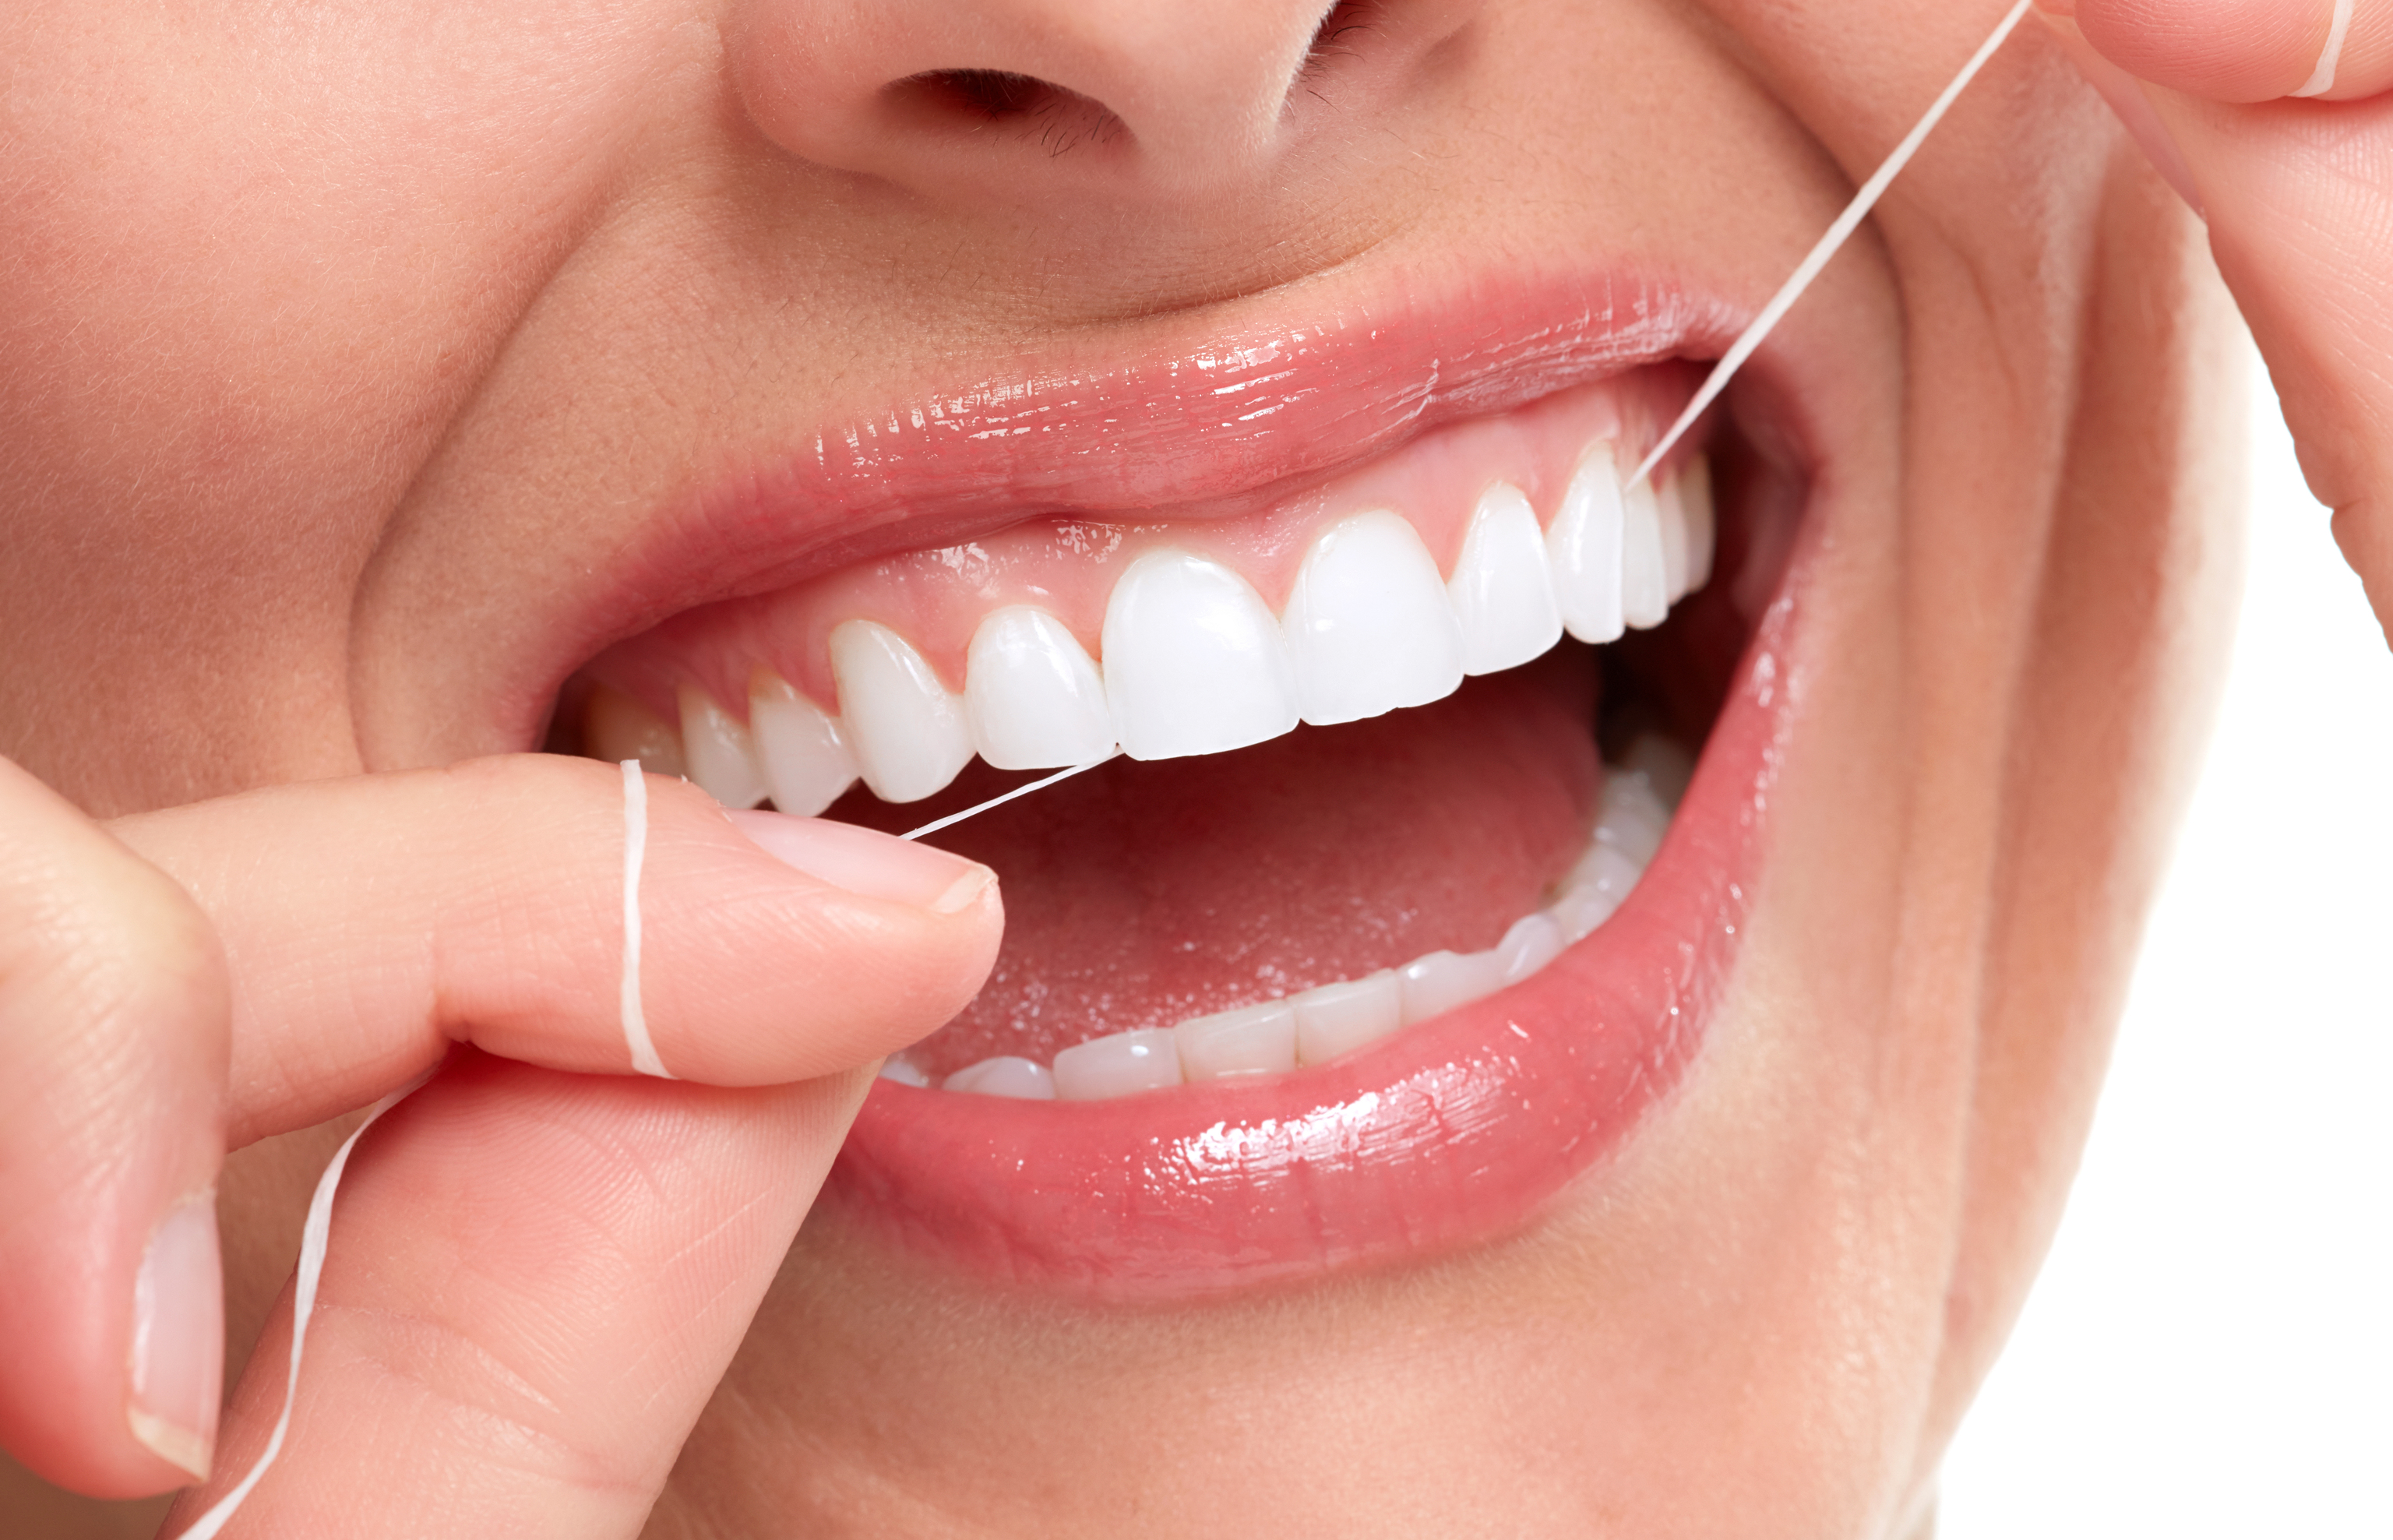 El mismo tramo de la seda dental no debería pasarse por otro diente.